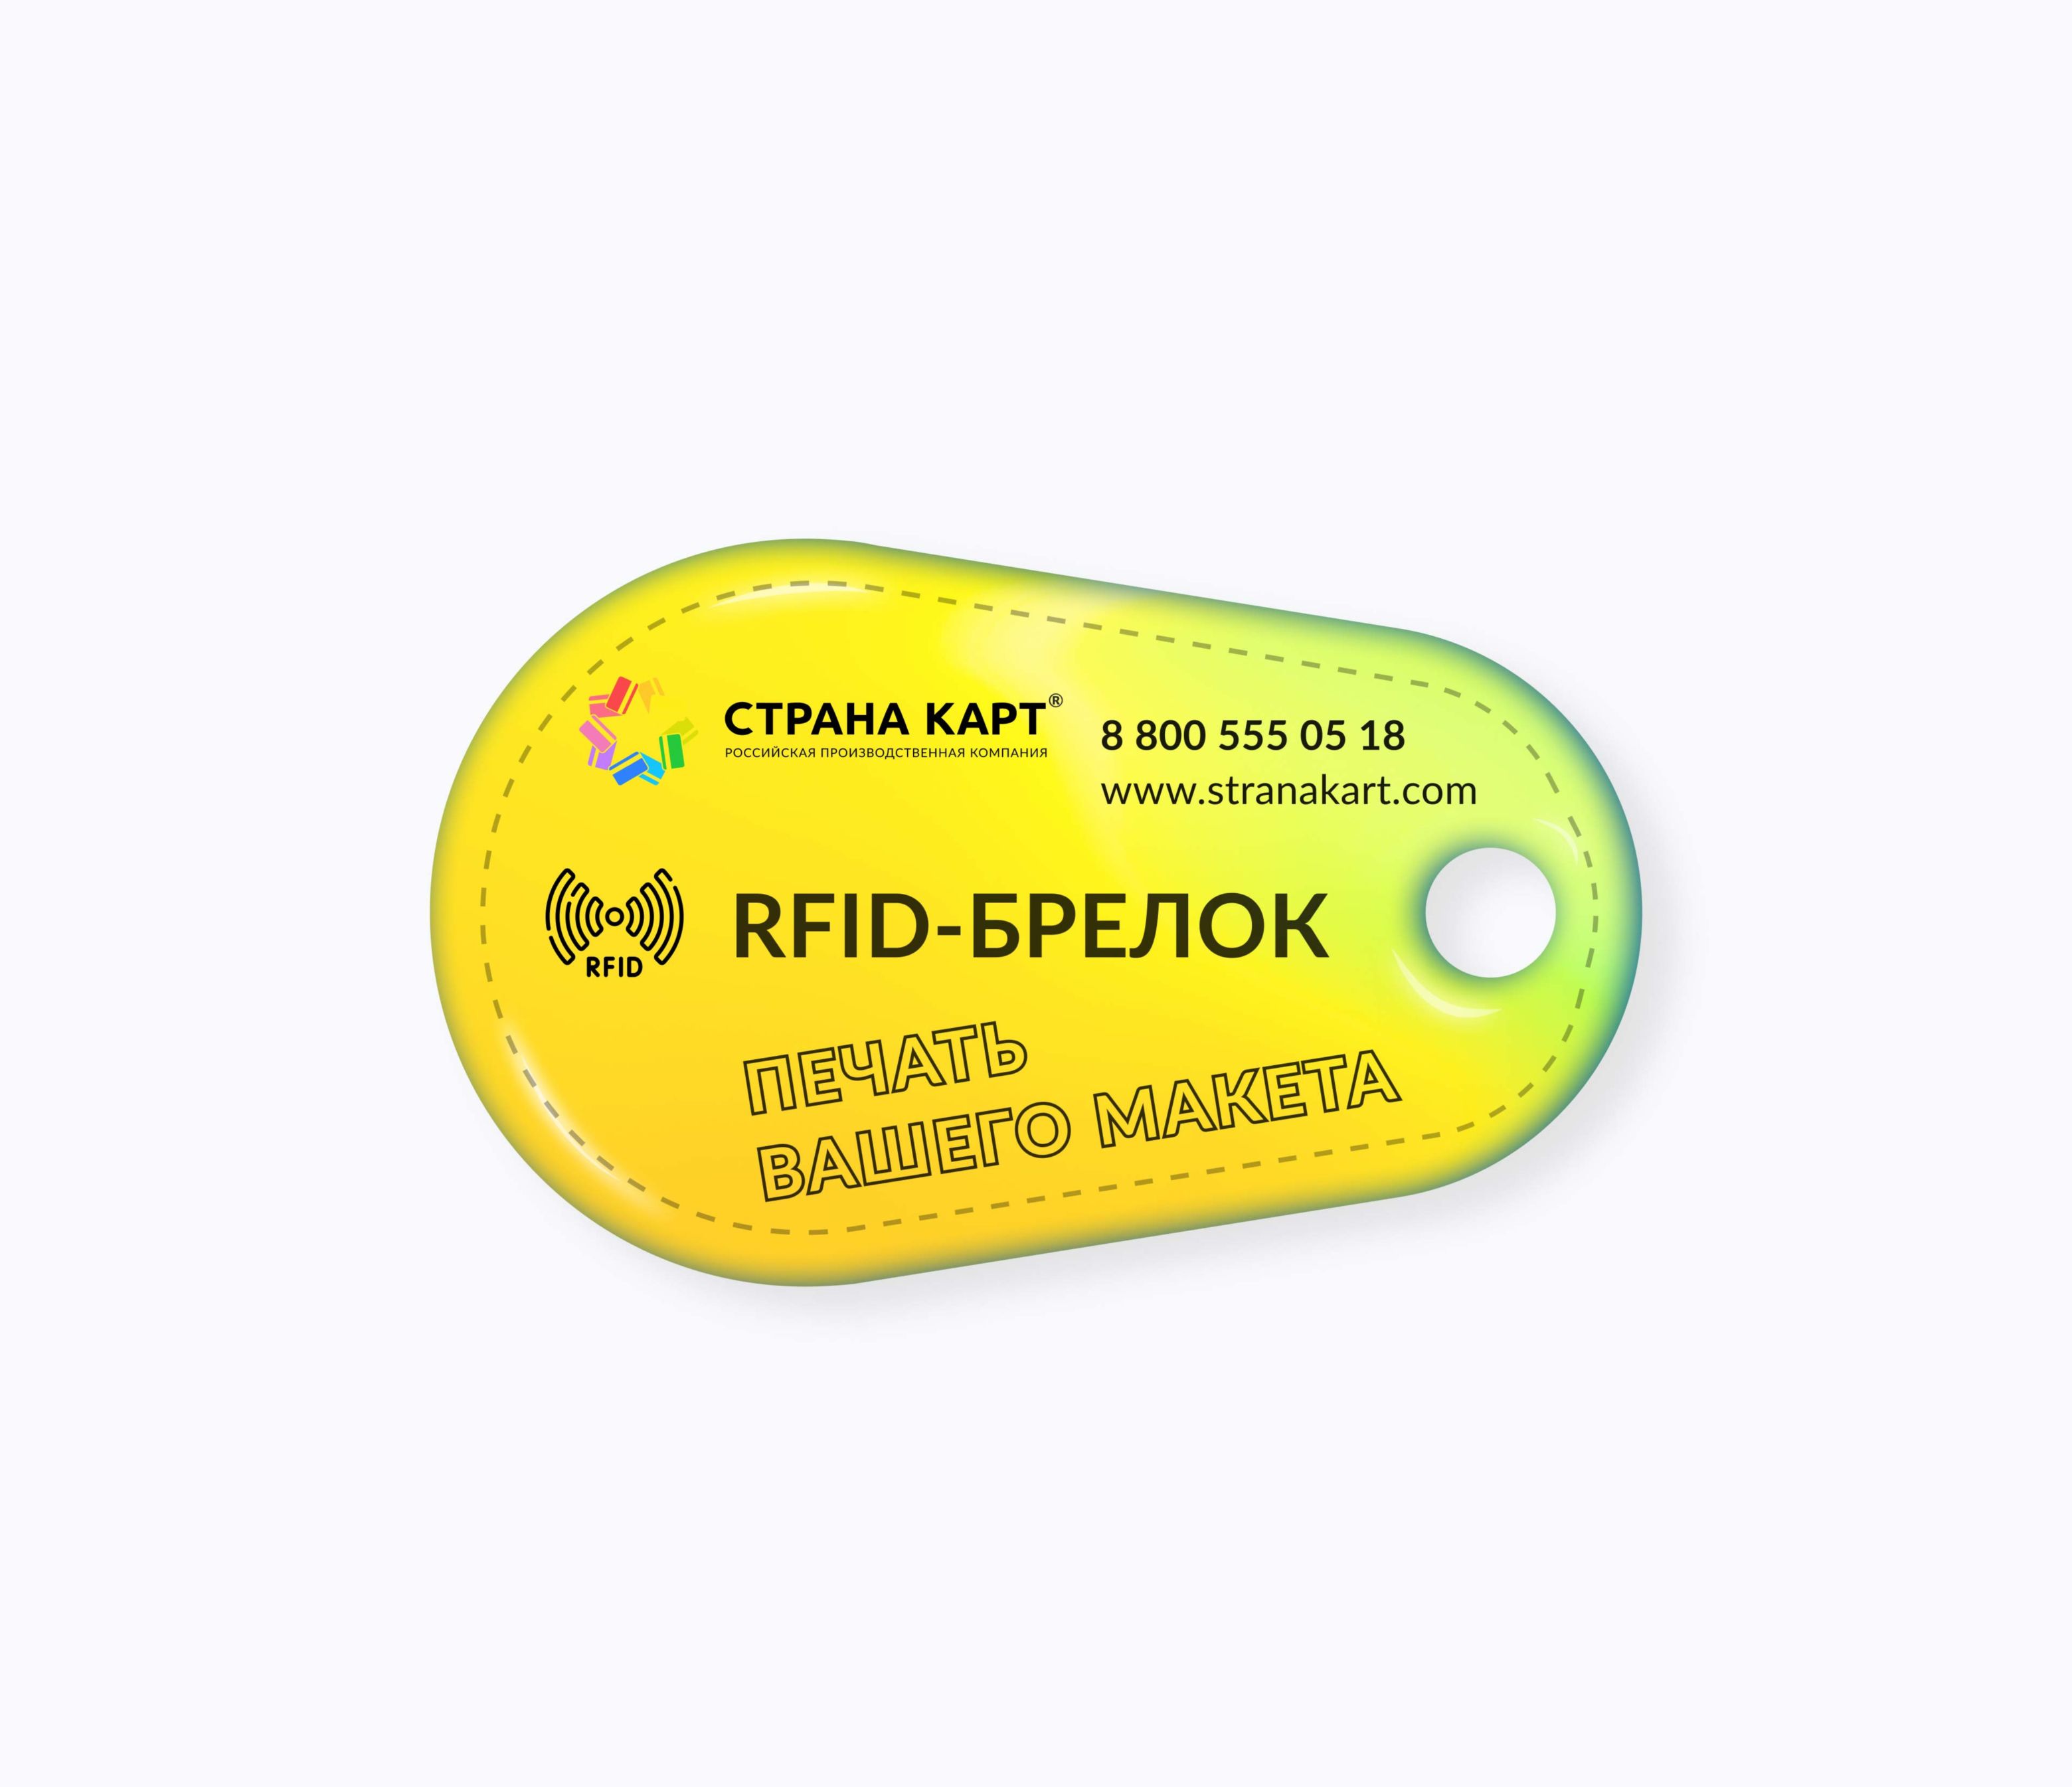 Каплевидные RFID-брелоки NEOKEY® с чипом для бассейнов RFID-брелоки NEOKEY® с чипом для бассейнов